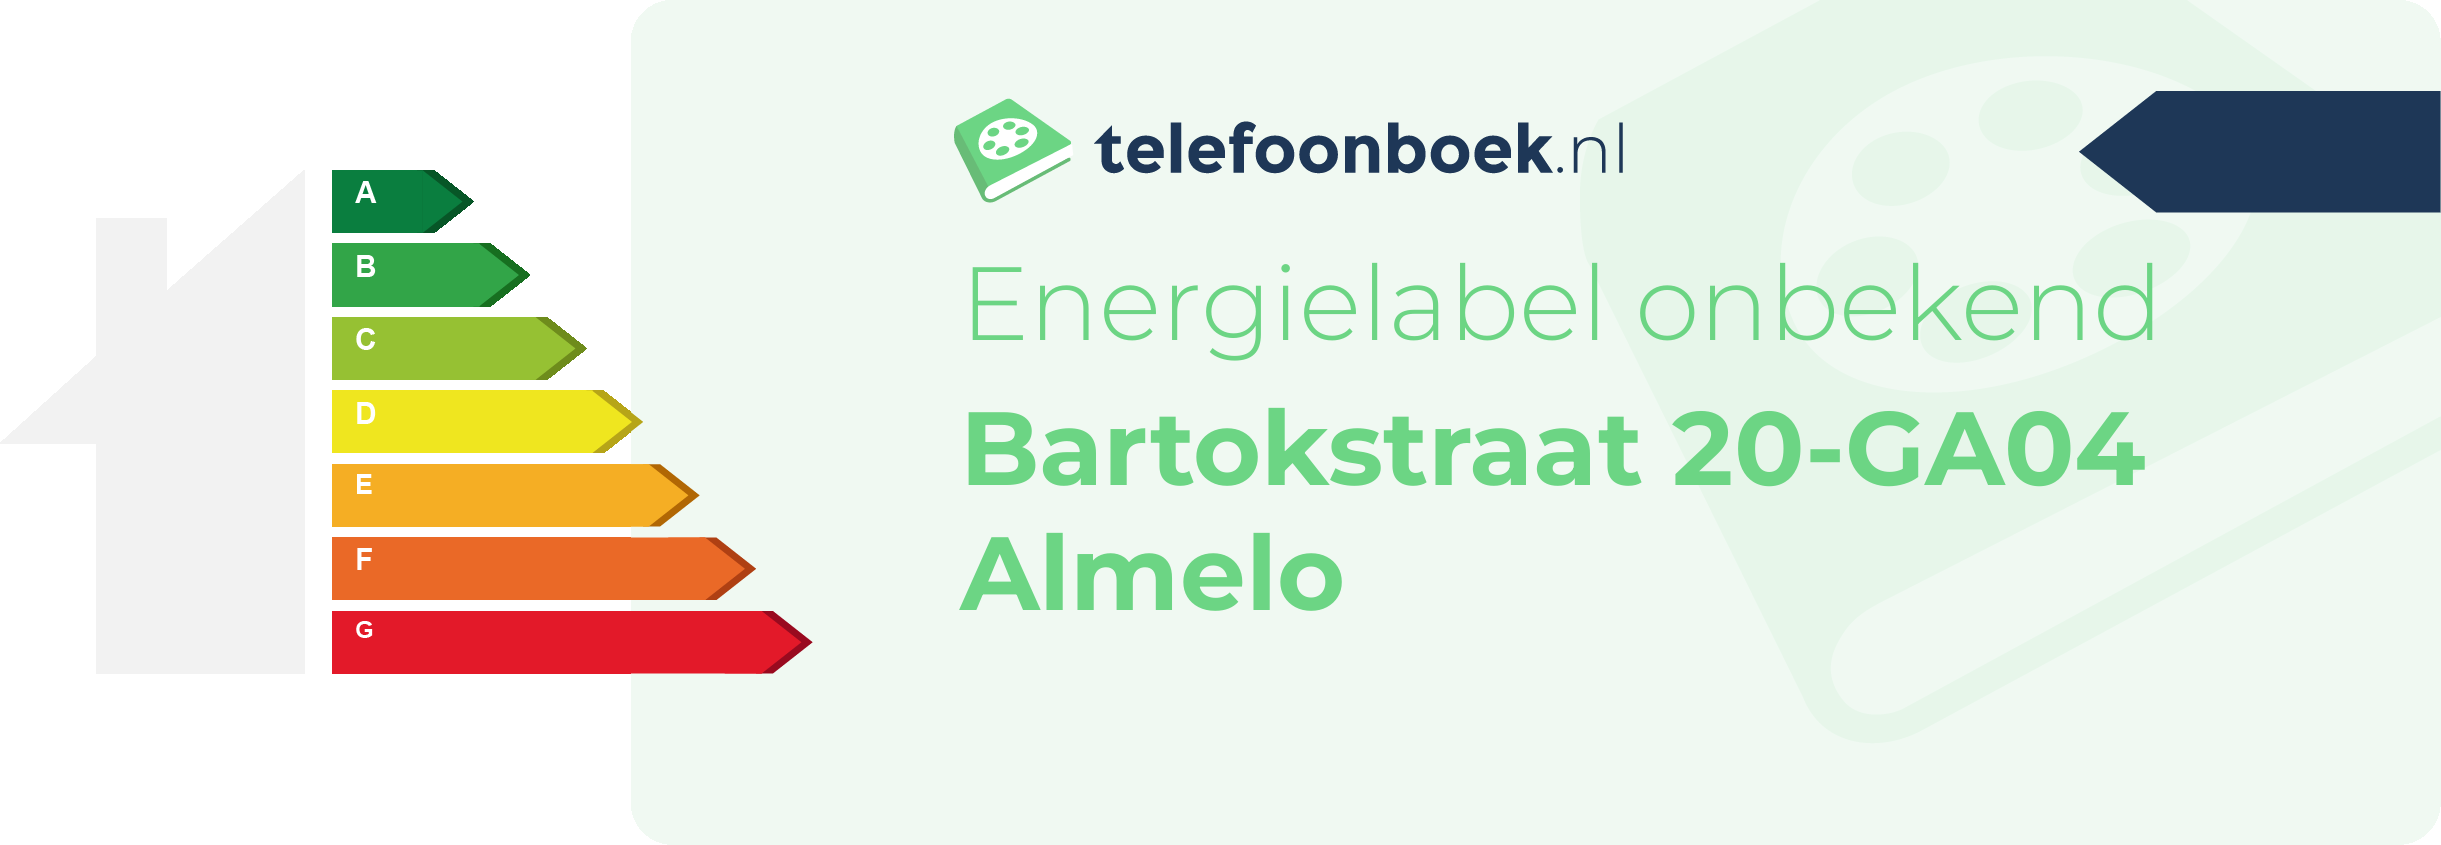 Energielabel Bartokstraat 20-GA04 Almelo